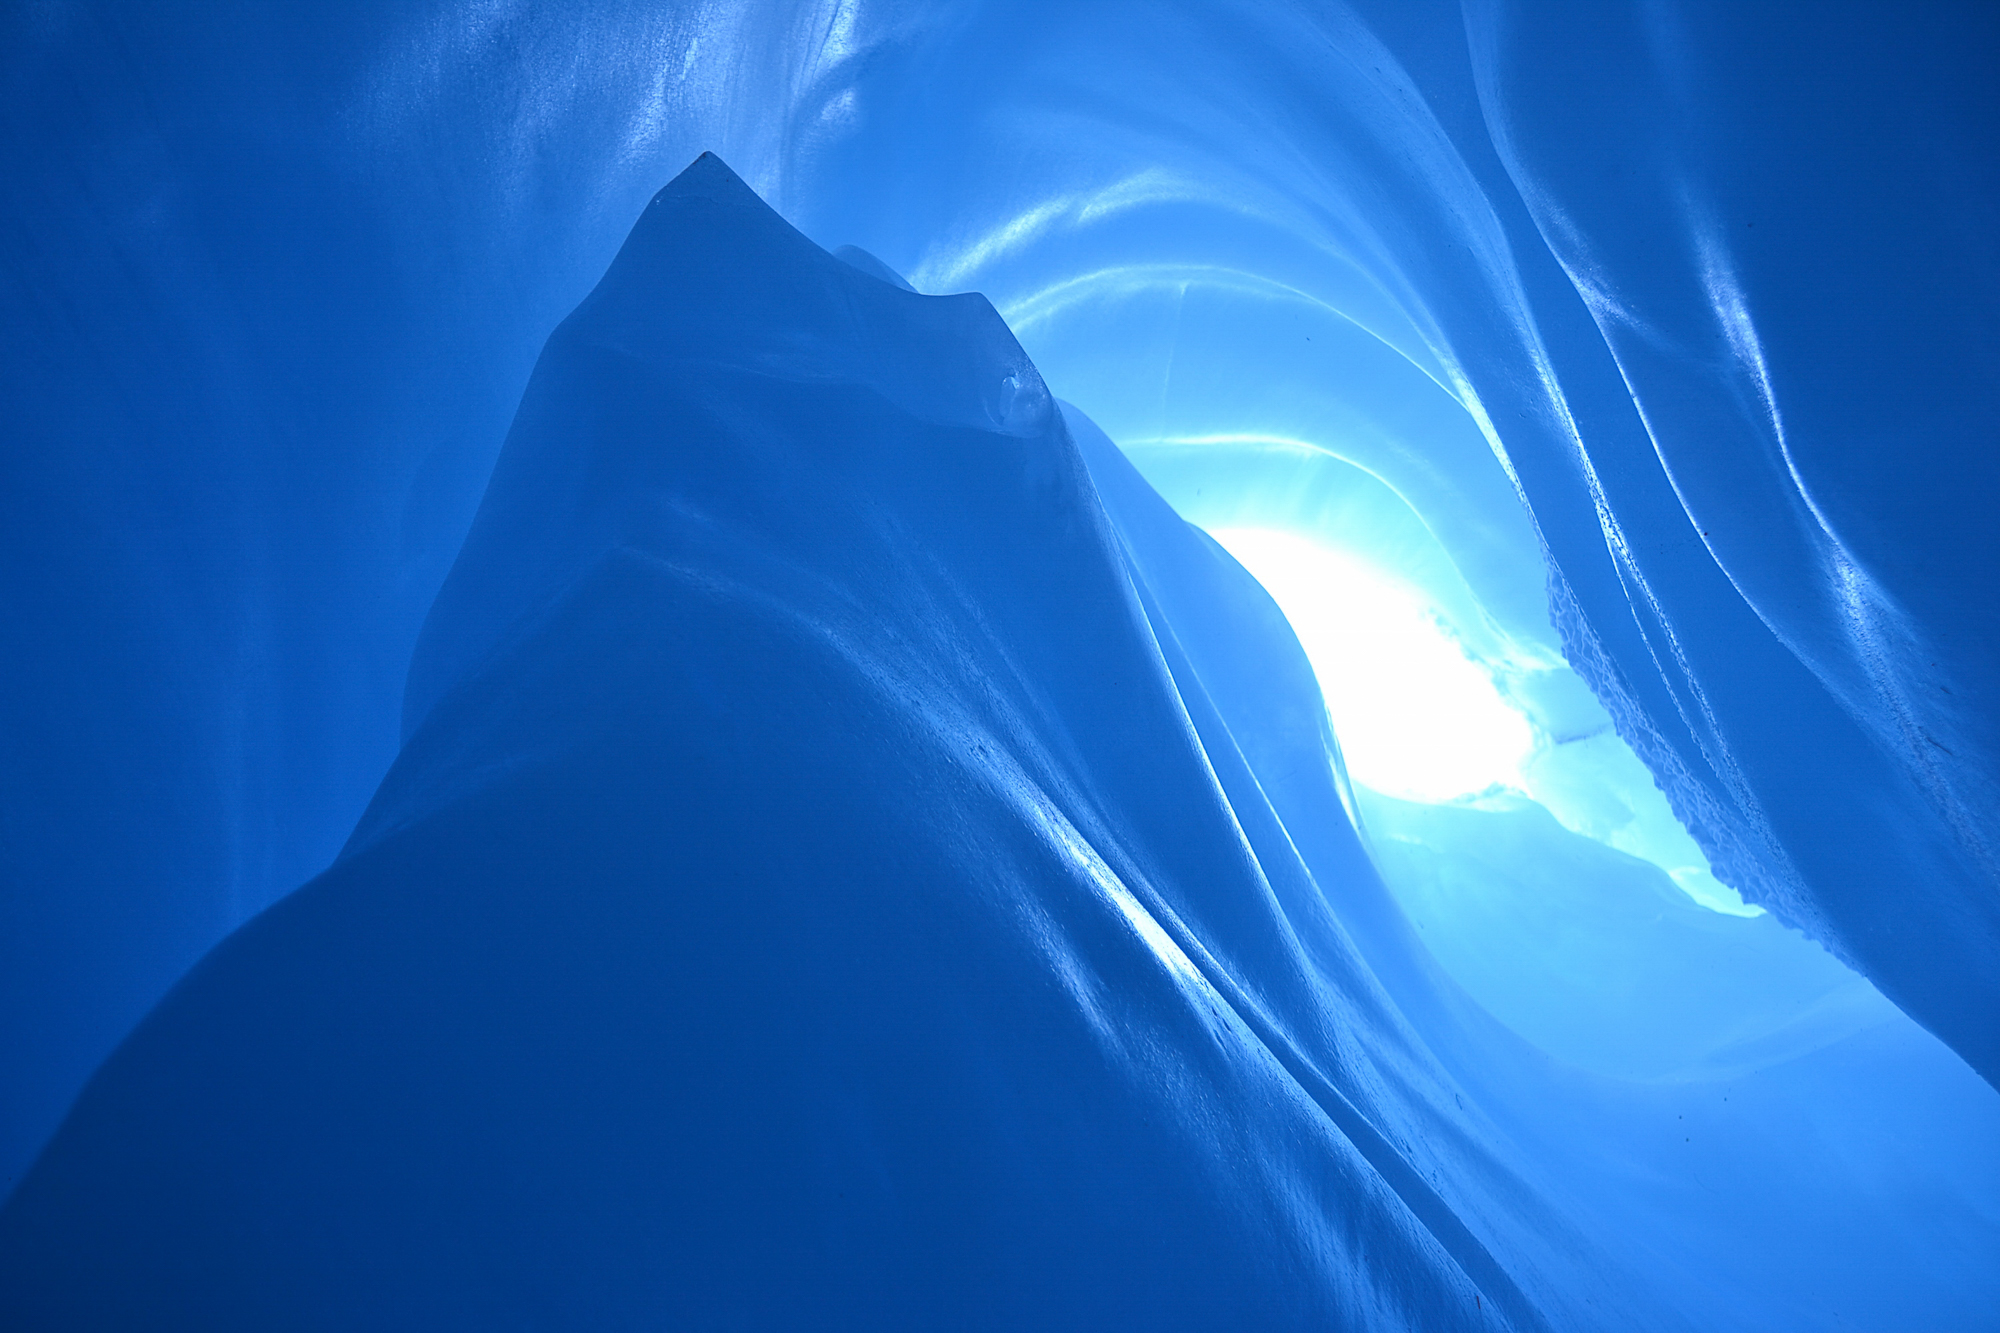 fotoNAT-UB 2014 - SELECCIONADA DE NATURA: Cova glacial (Verònica Casadó)